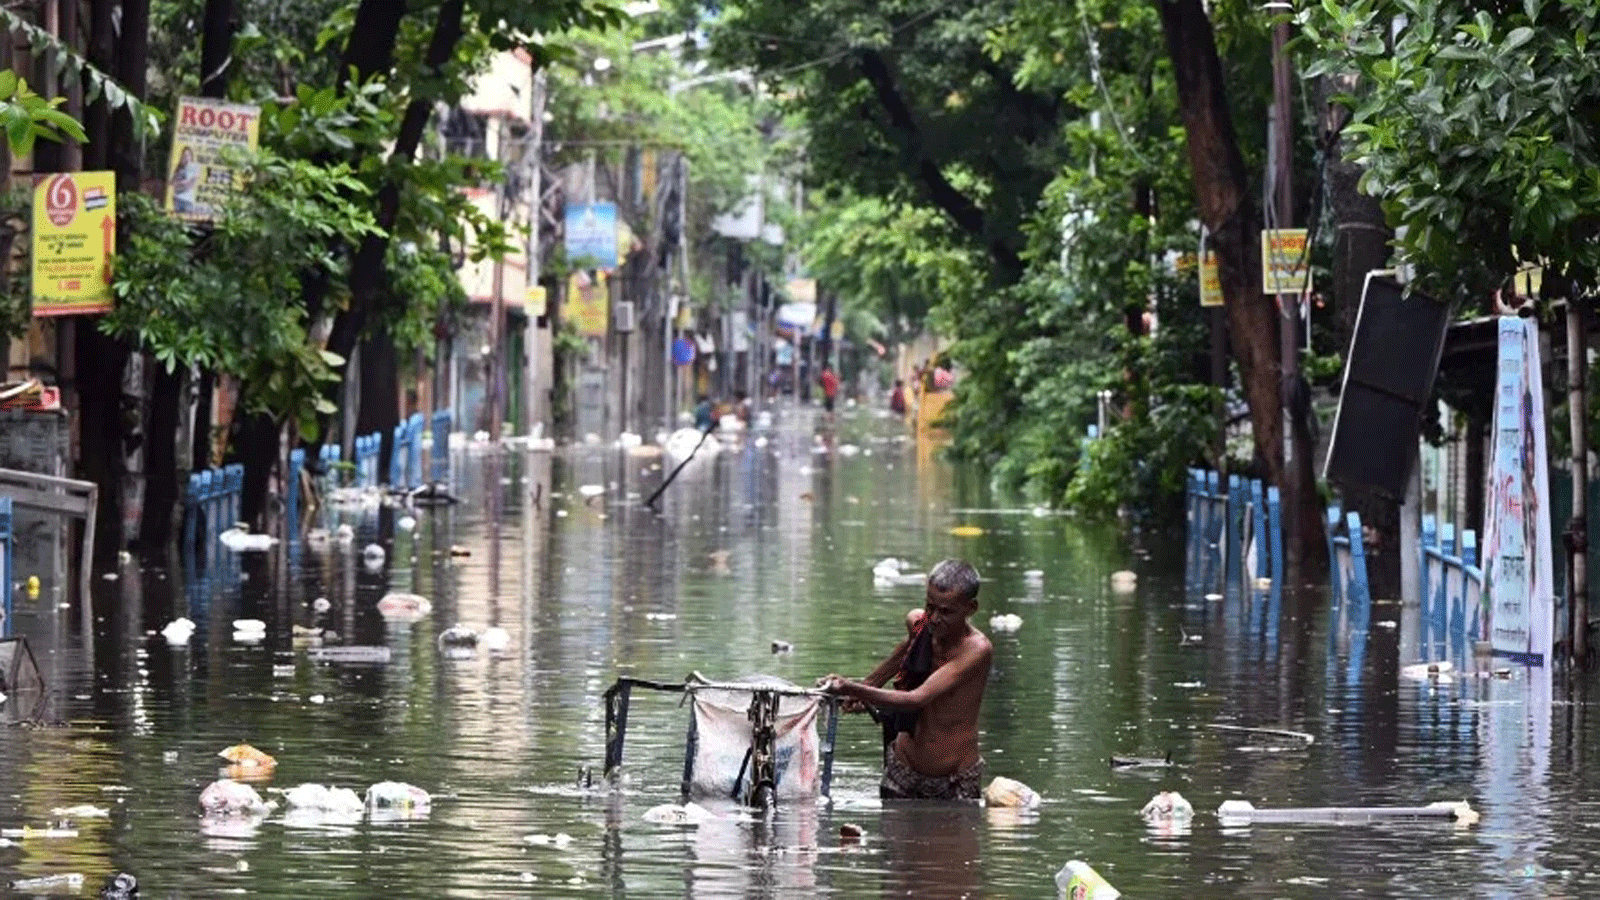 رجل يدفع شاحنته ثلاثية العجلات عبر مياه الفيضانات بعد هطول الأمطار في كولكاتا. بتاريخ 31 تموز/ يوليو 2021